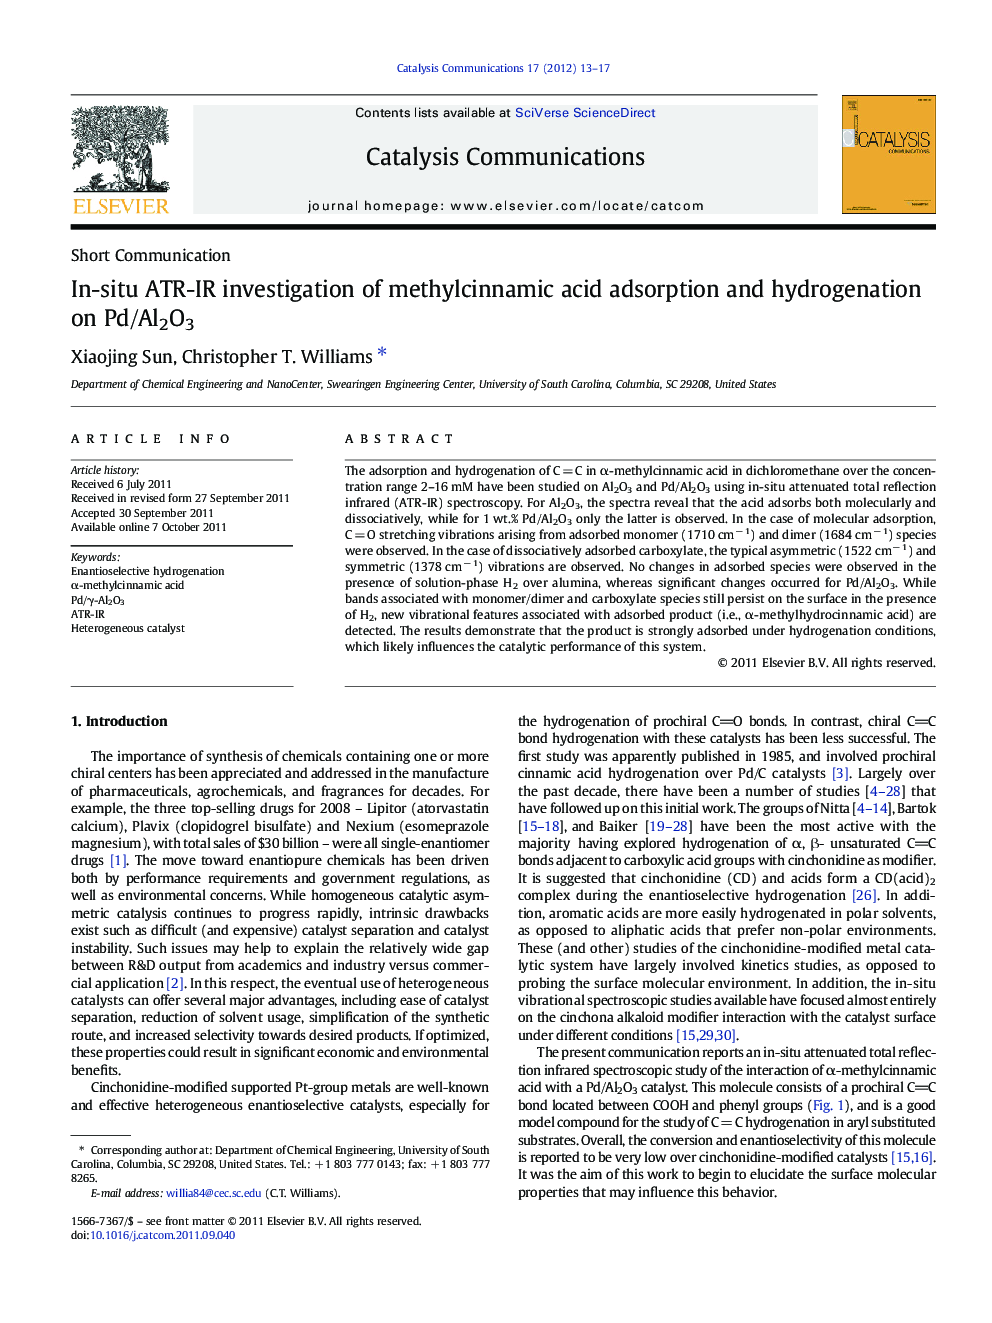 In-situ ATR-IR investigation of methylcinnamic acid adsorption and hydrogenation on Pd/Al2O3